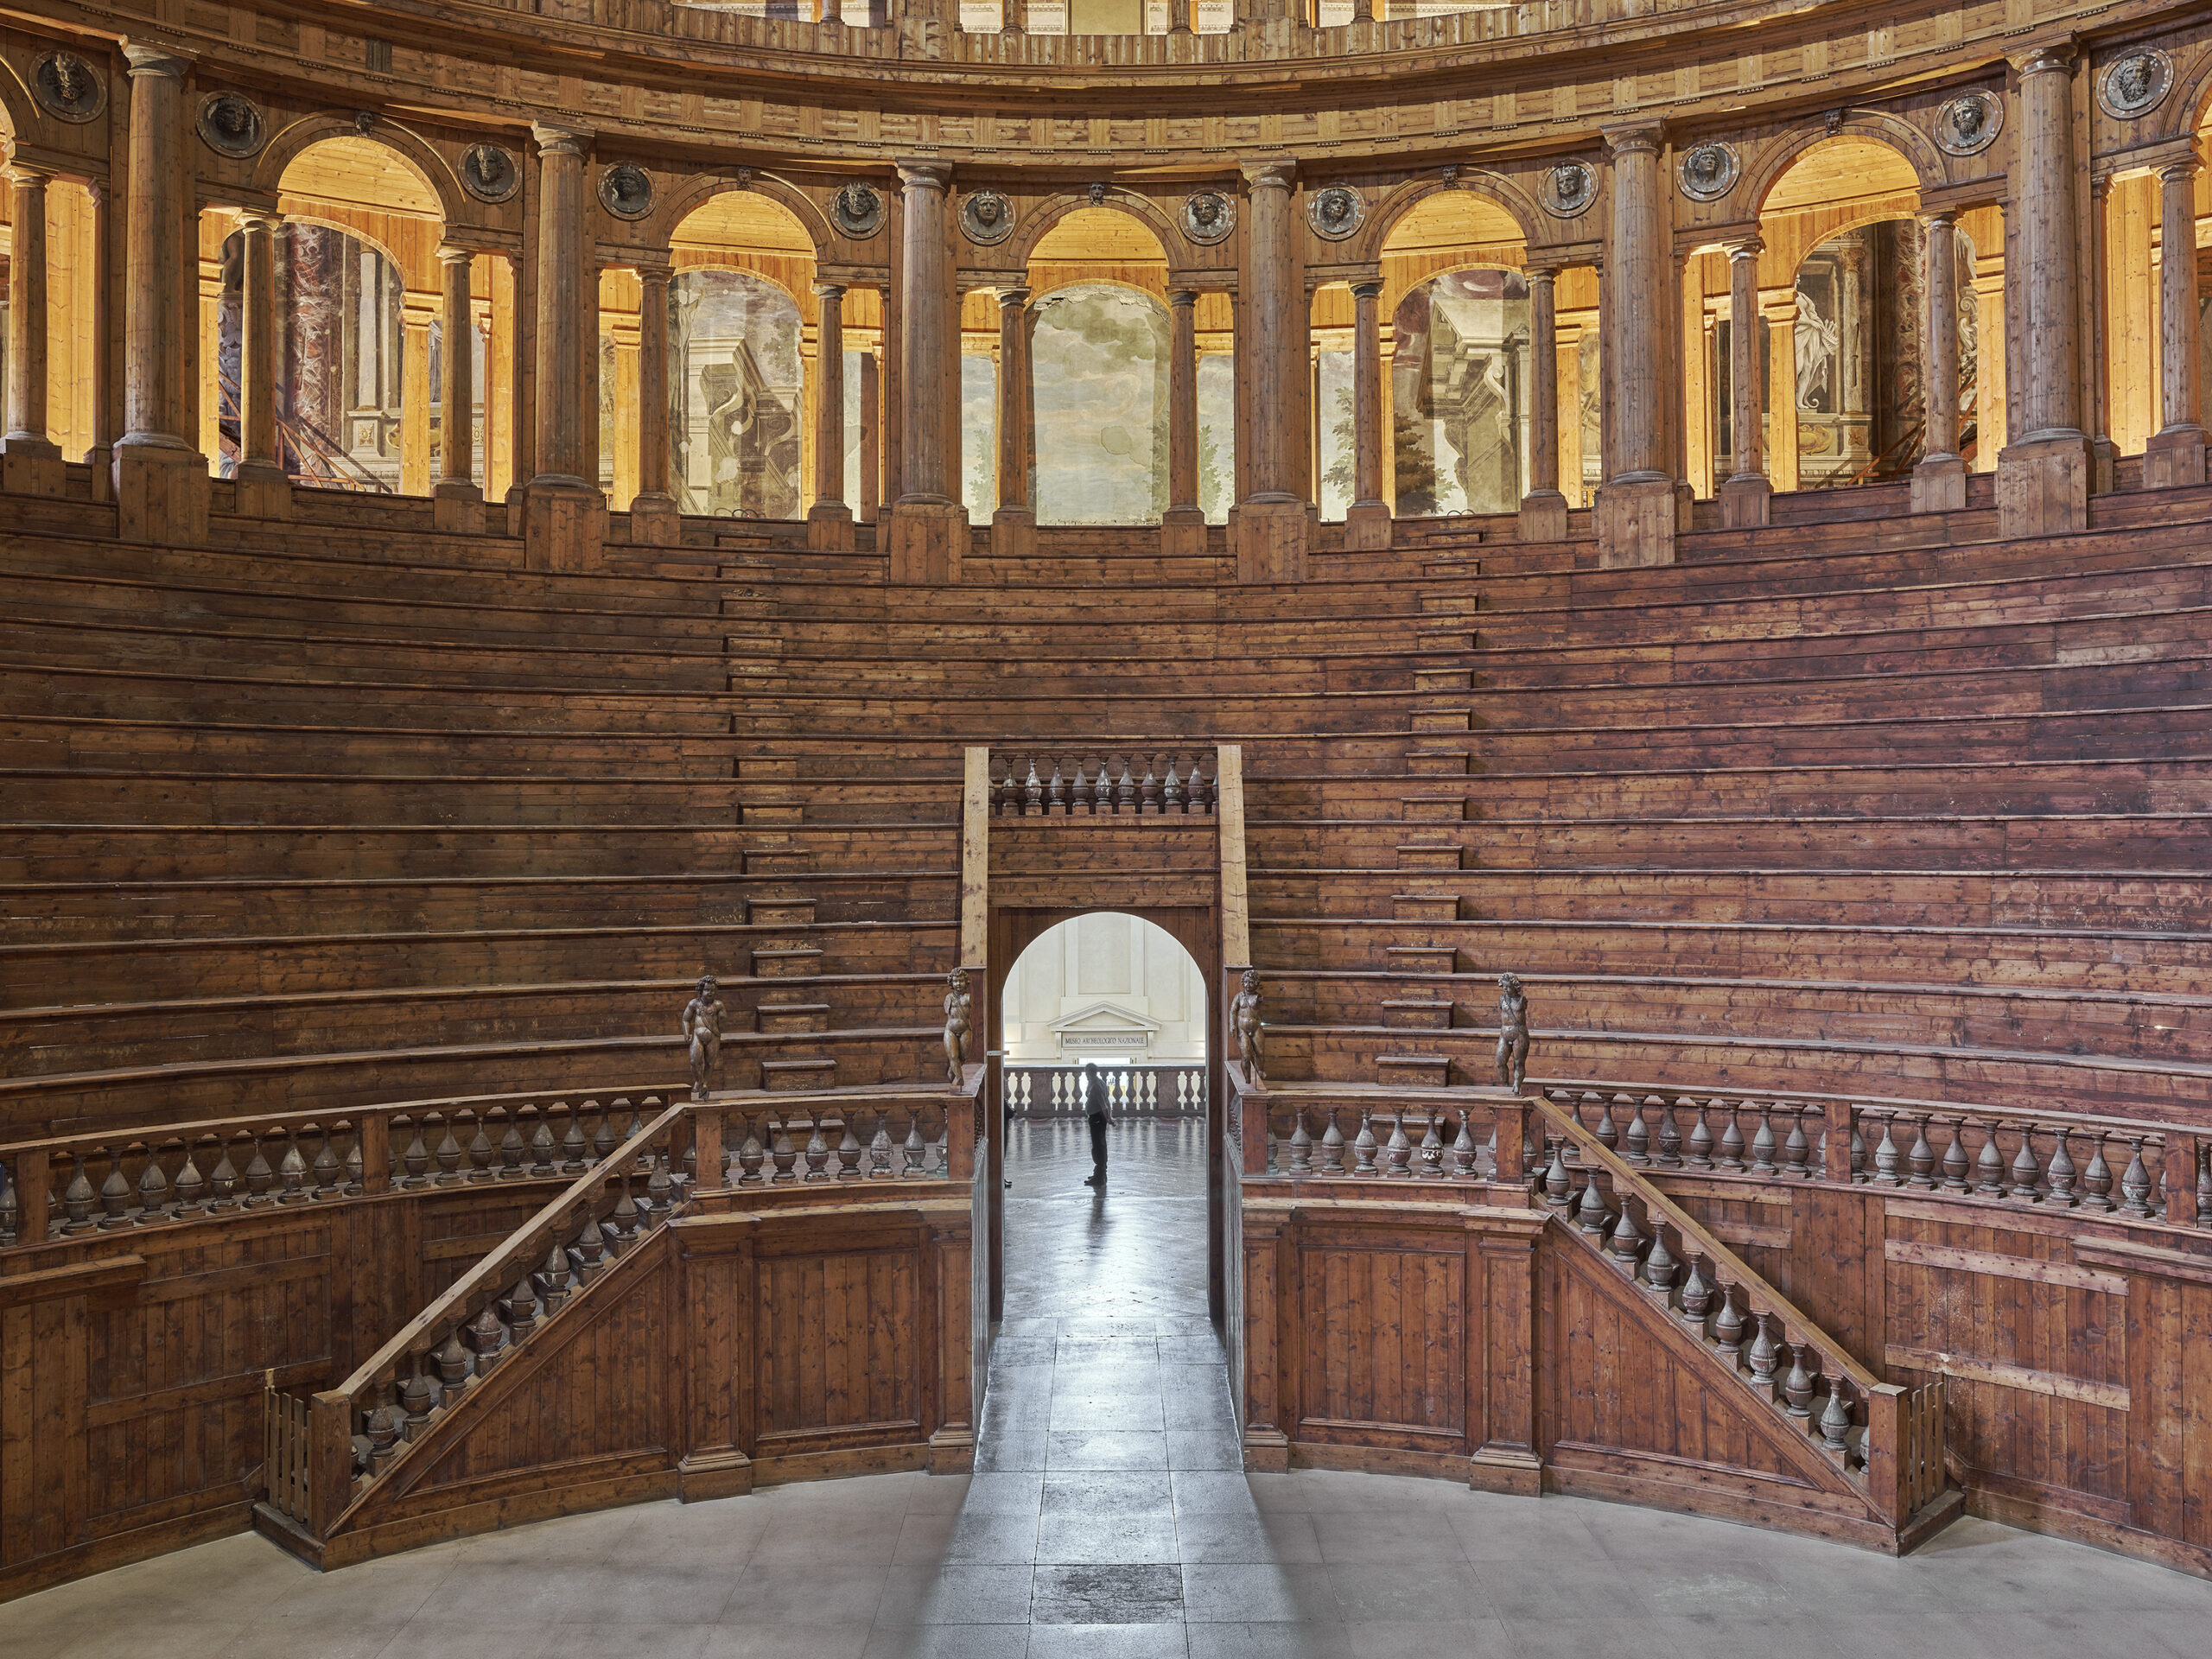 Architettura, Arte, Potere. Parma dedica una grande mostra alla storica famiglia Farnese